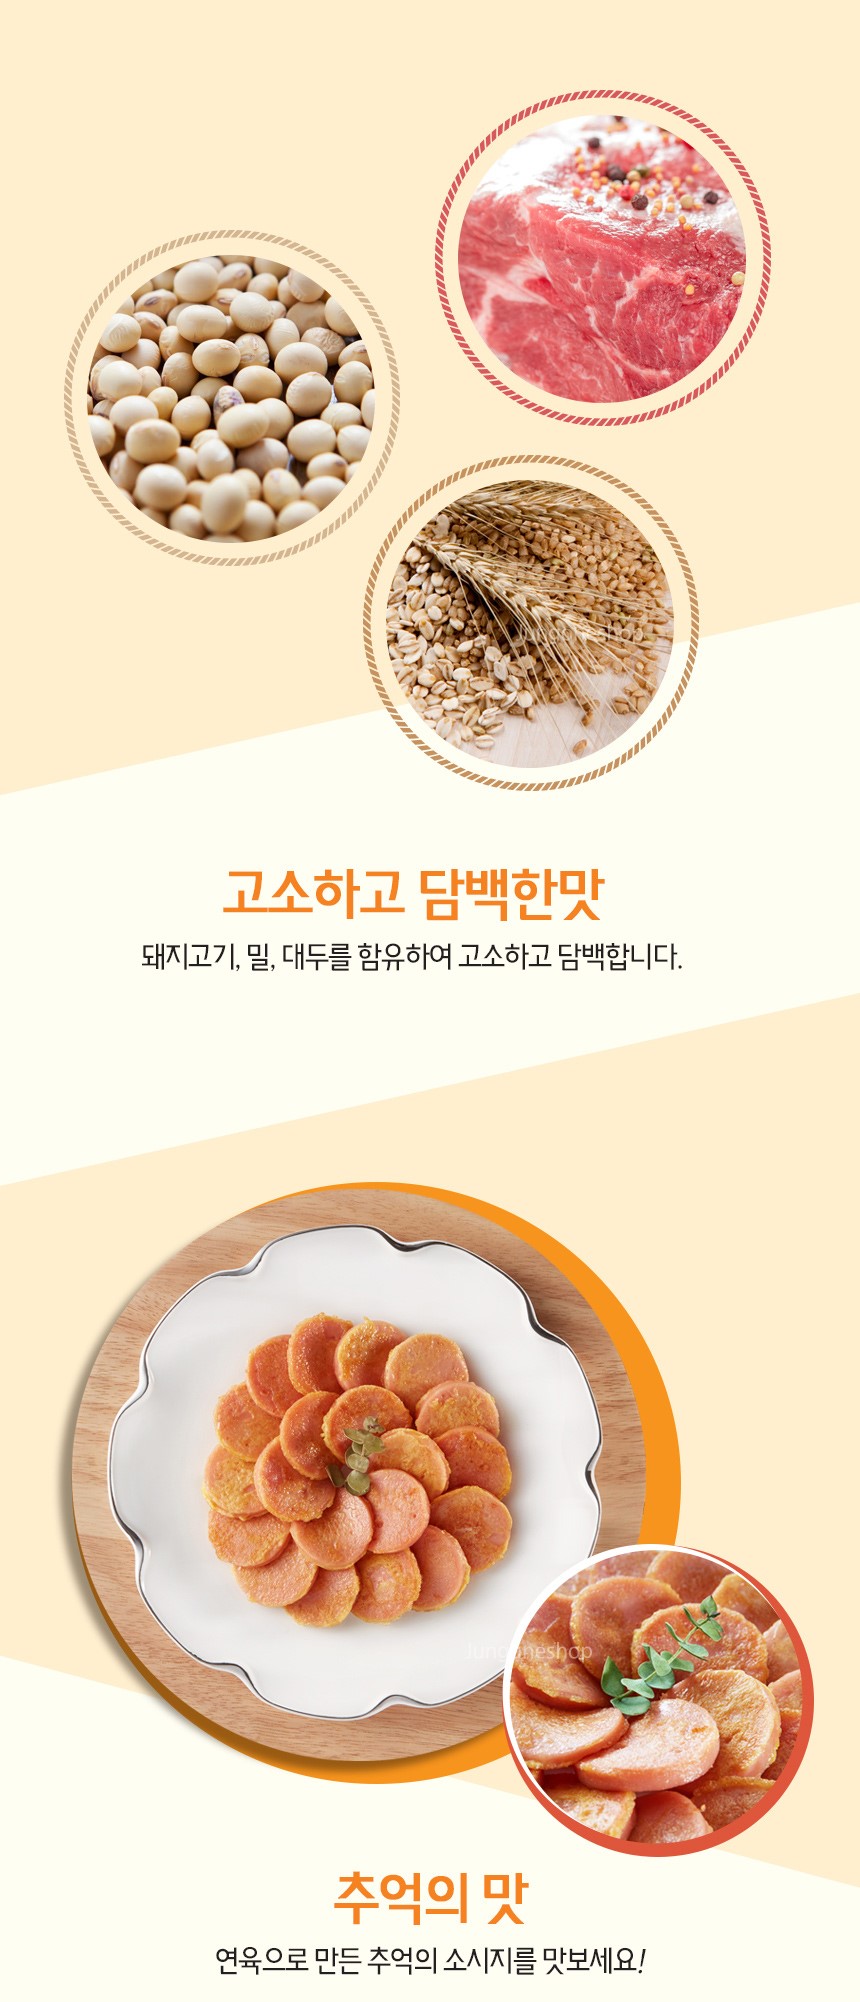 韓國食品-[청정원] 옛날소시지 250g